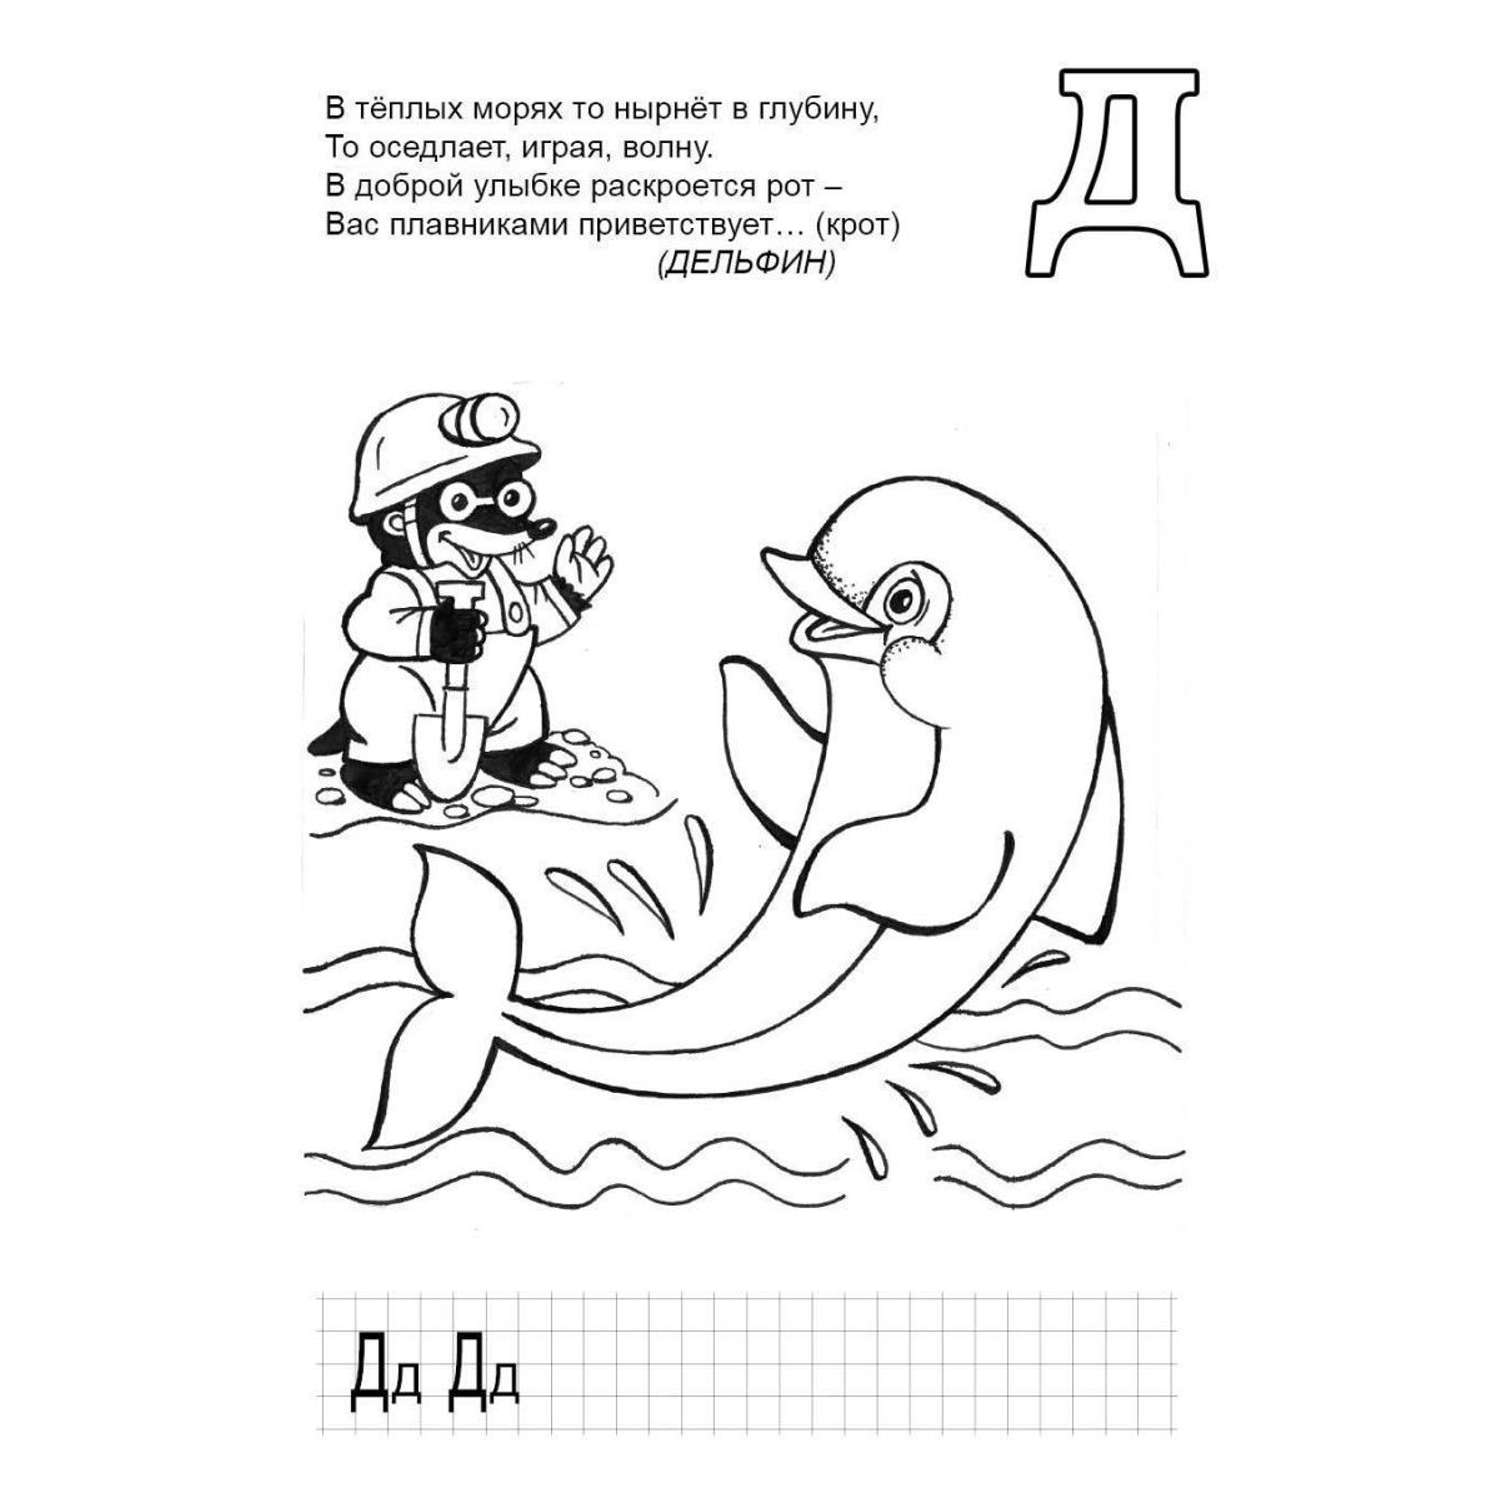 Книга Алтей Азбука для детей с наклейками набор 2 шт. - фото 4